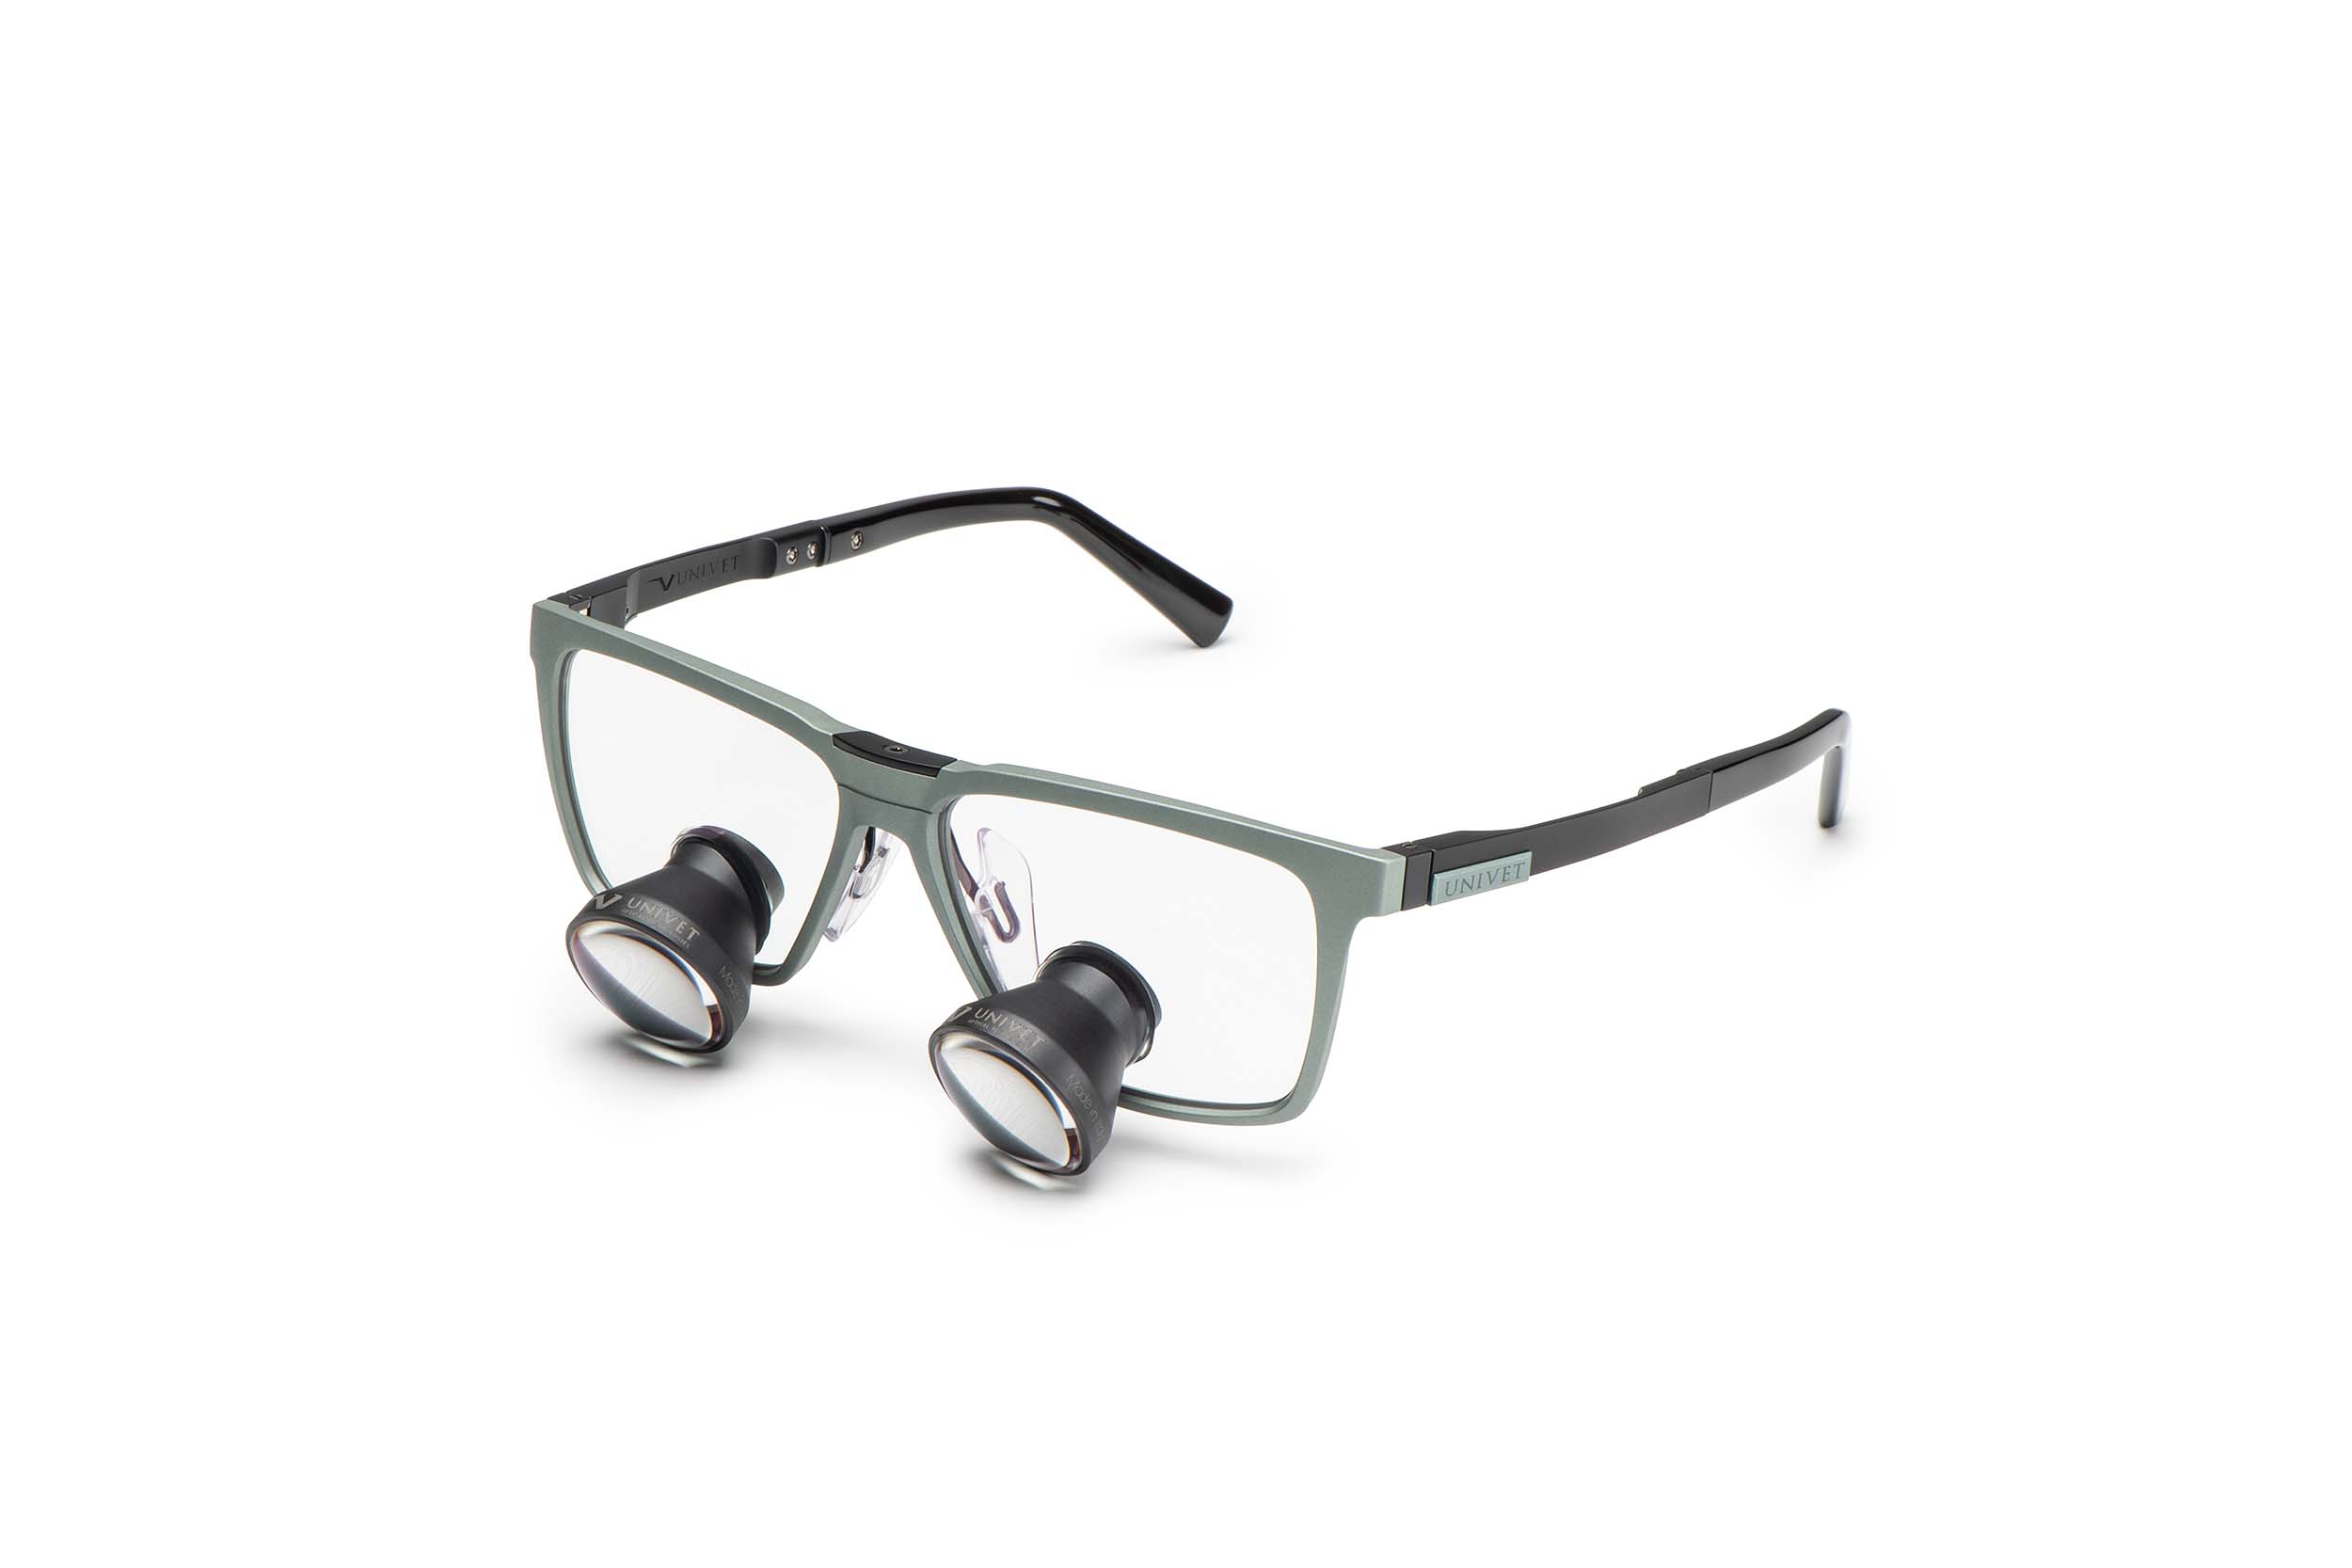 Loepbril met 2.5x vergroting